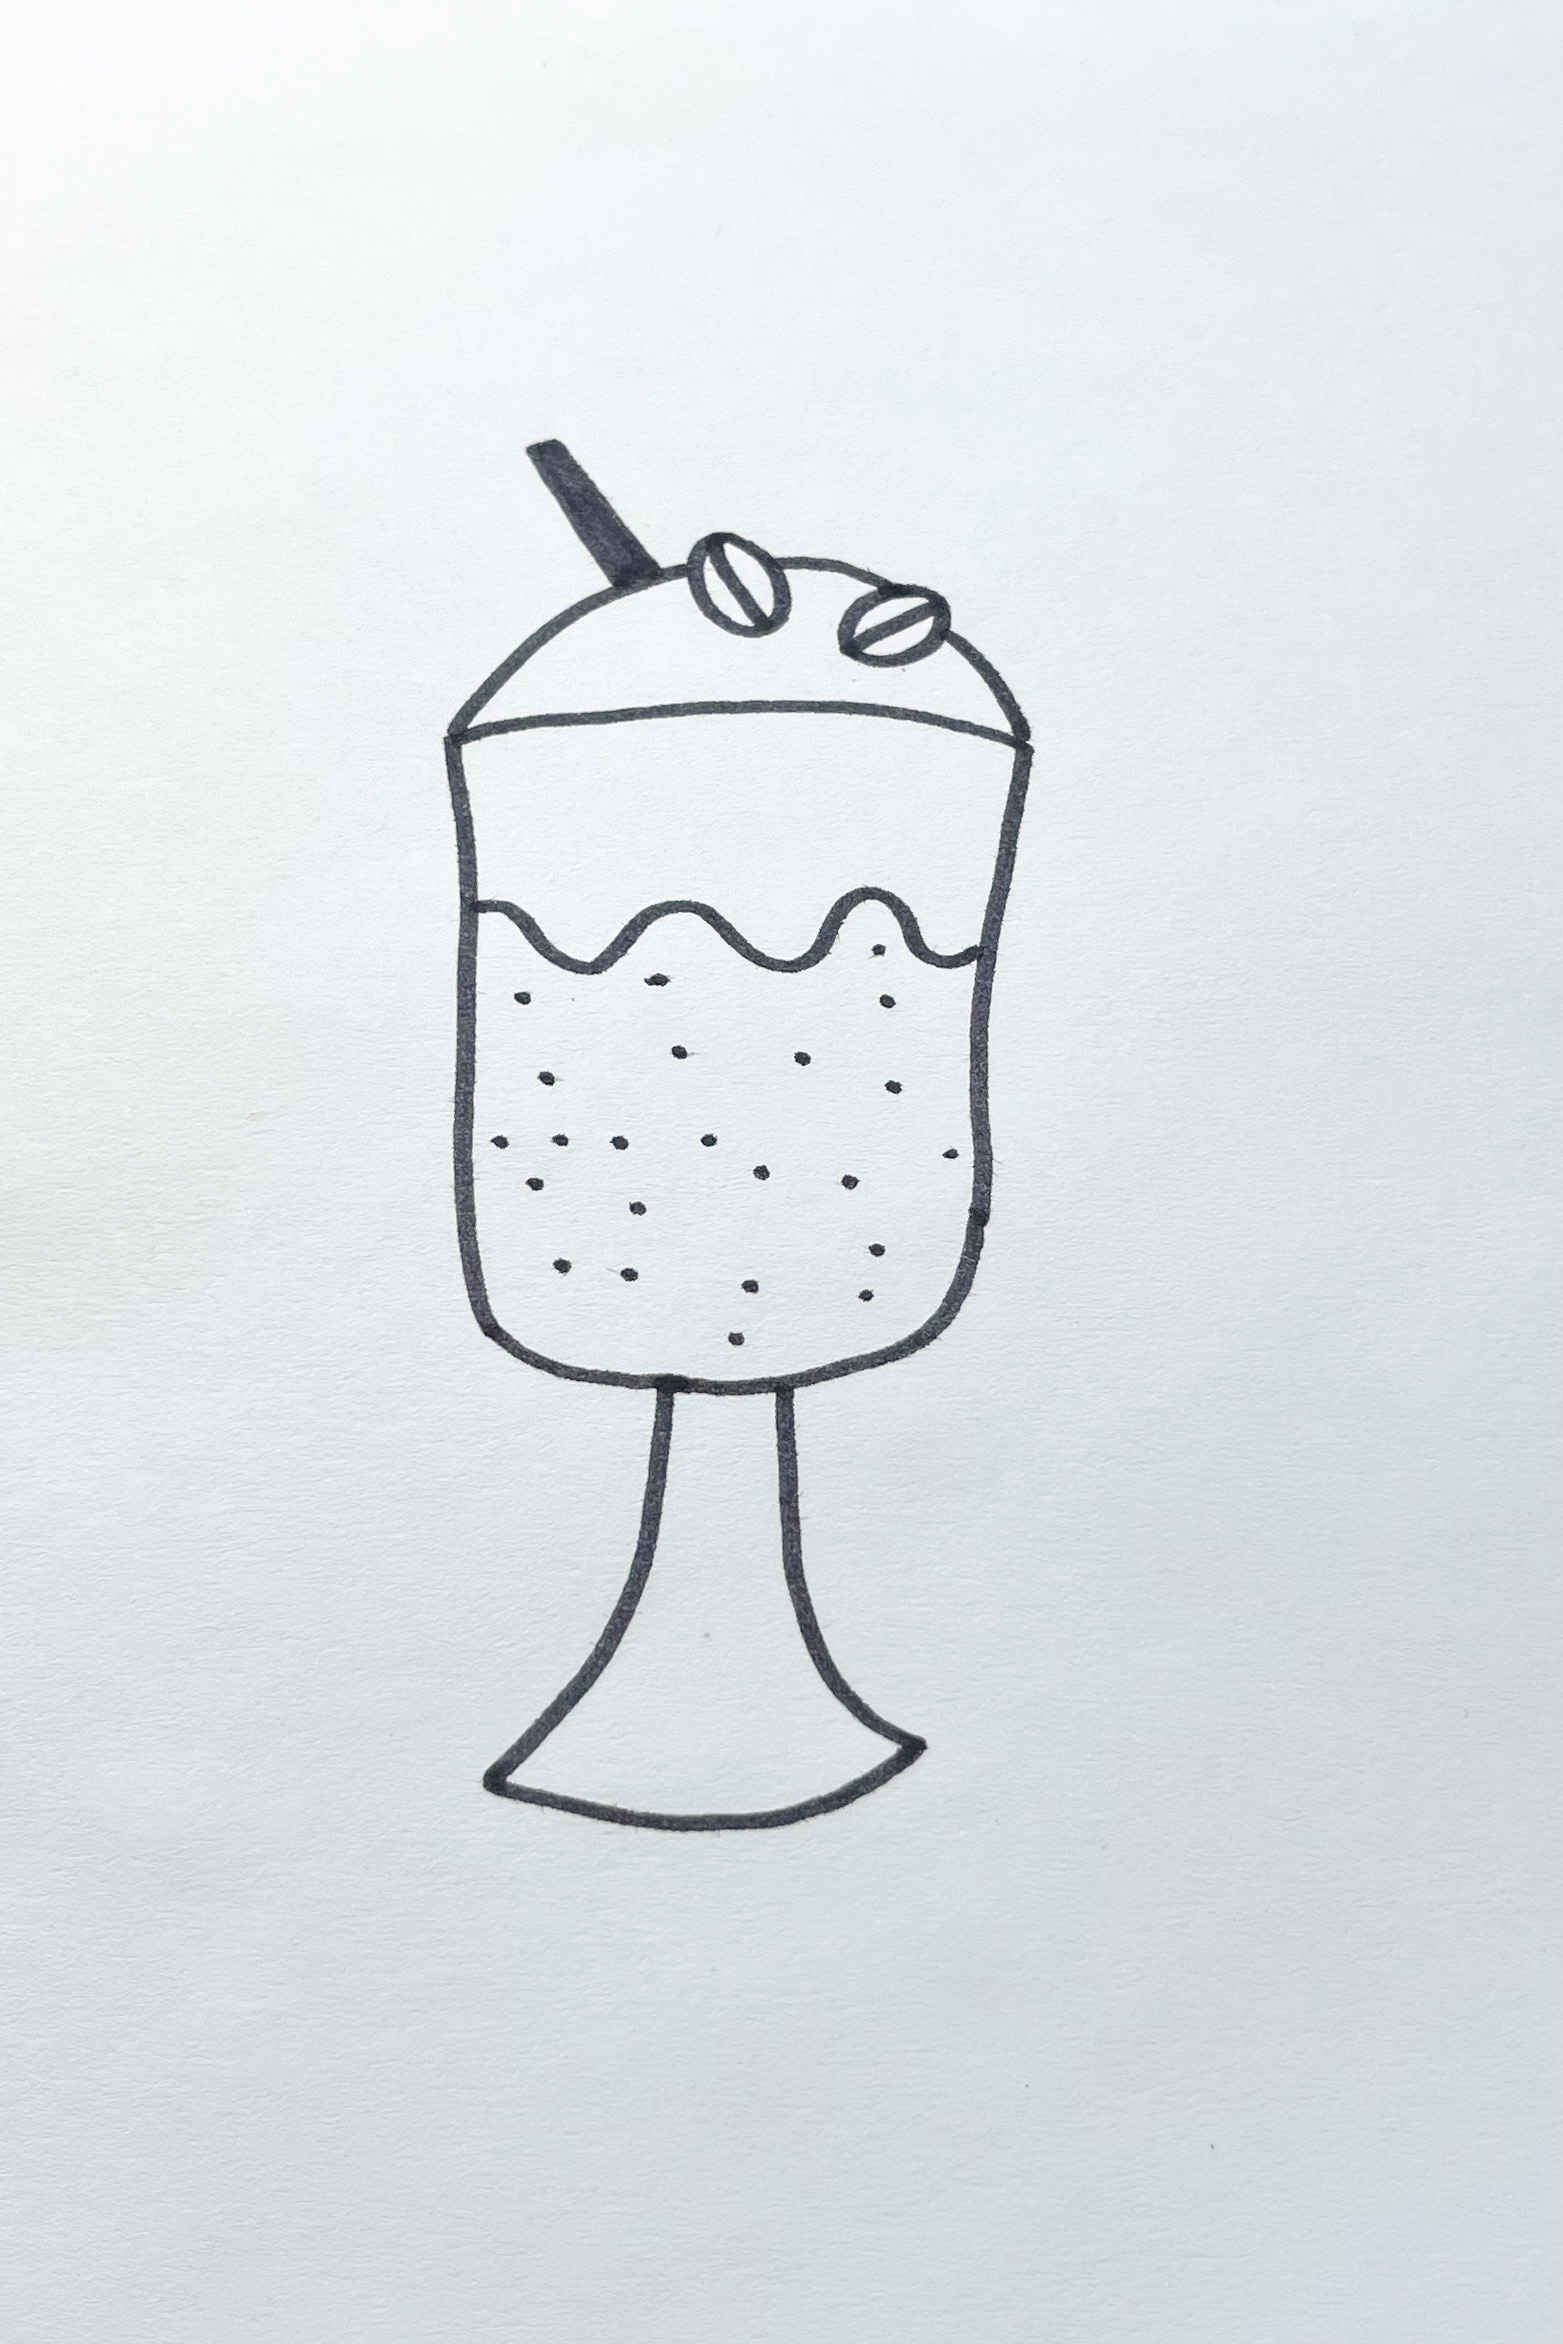 iced coffee drawing